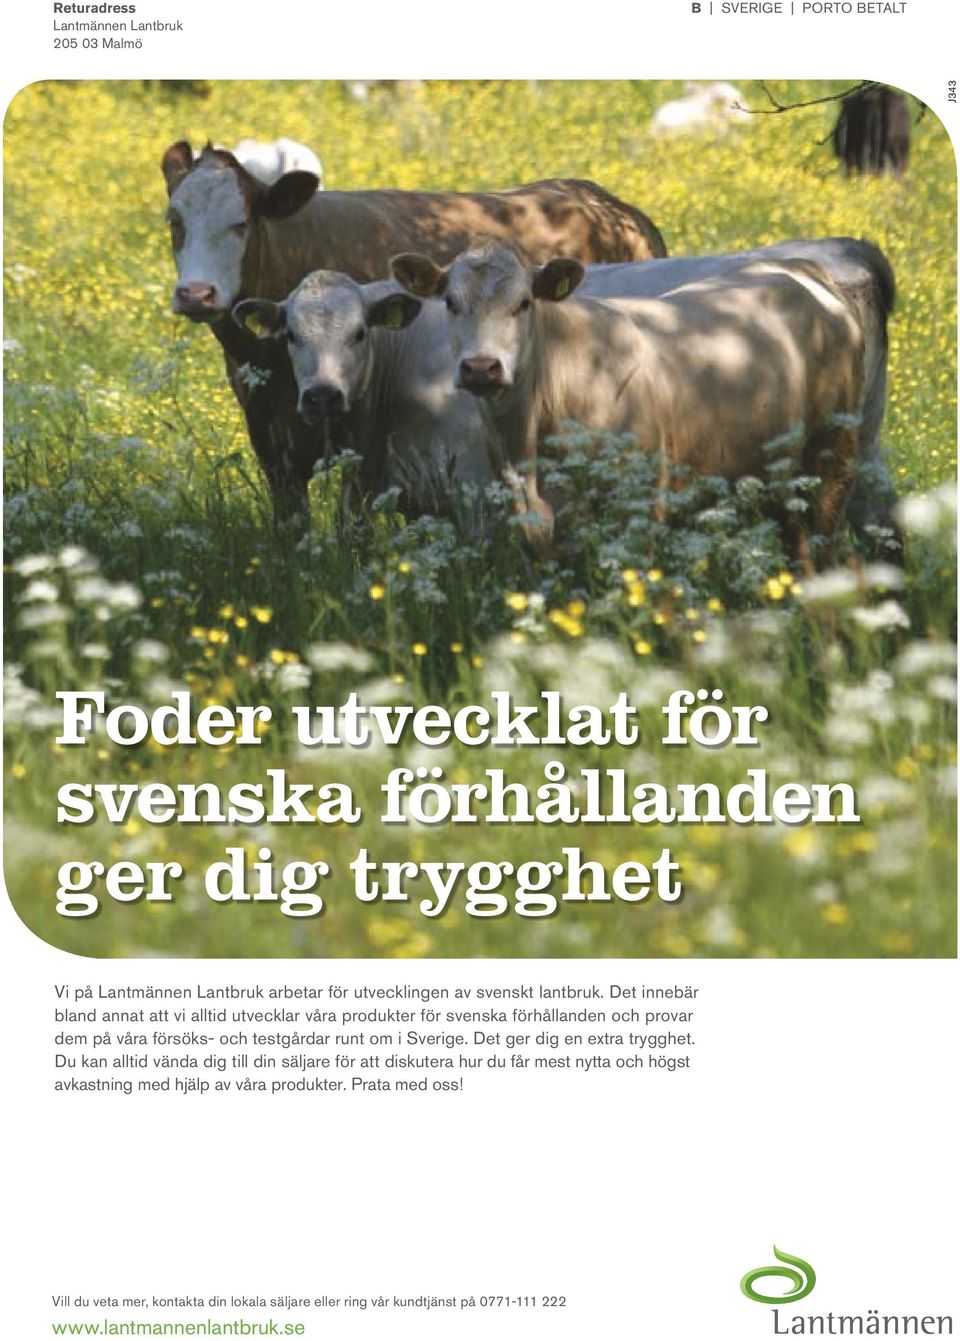 Det innebär bland annat att vi alltid utvecklar våra produkter för svenska förhållanden och provar dem på våra försöks- och testgårdar runt om i Sverige.